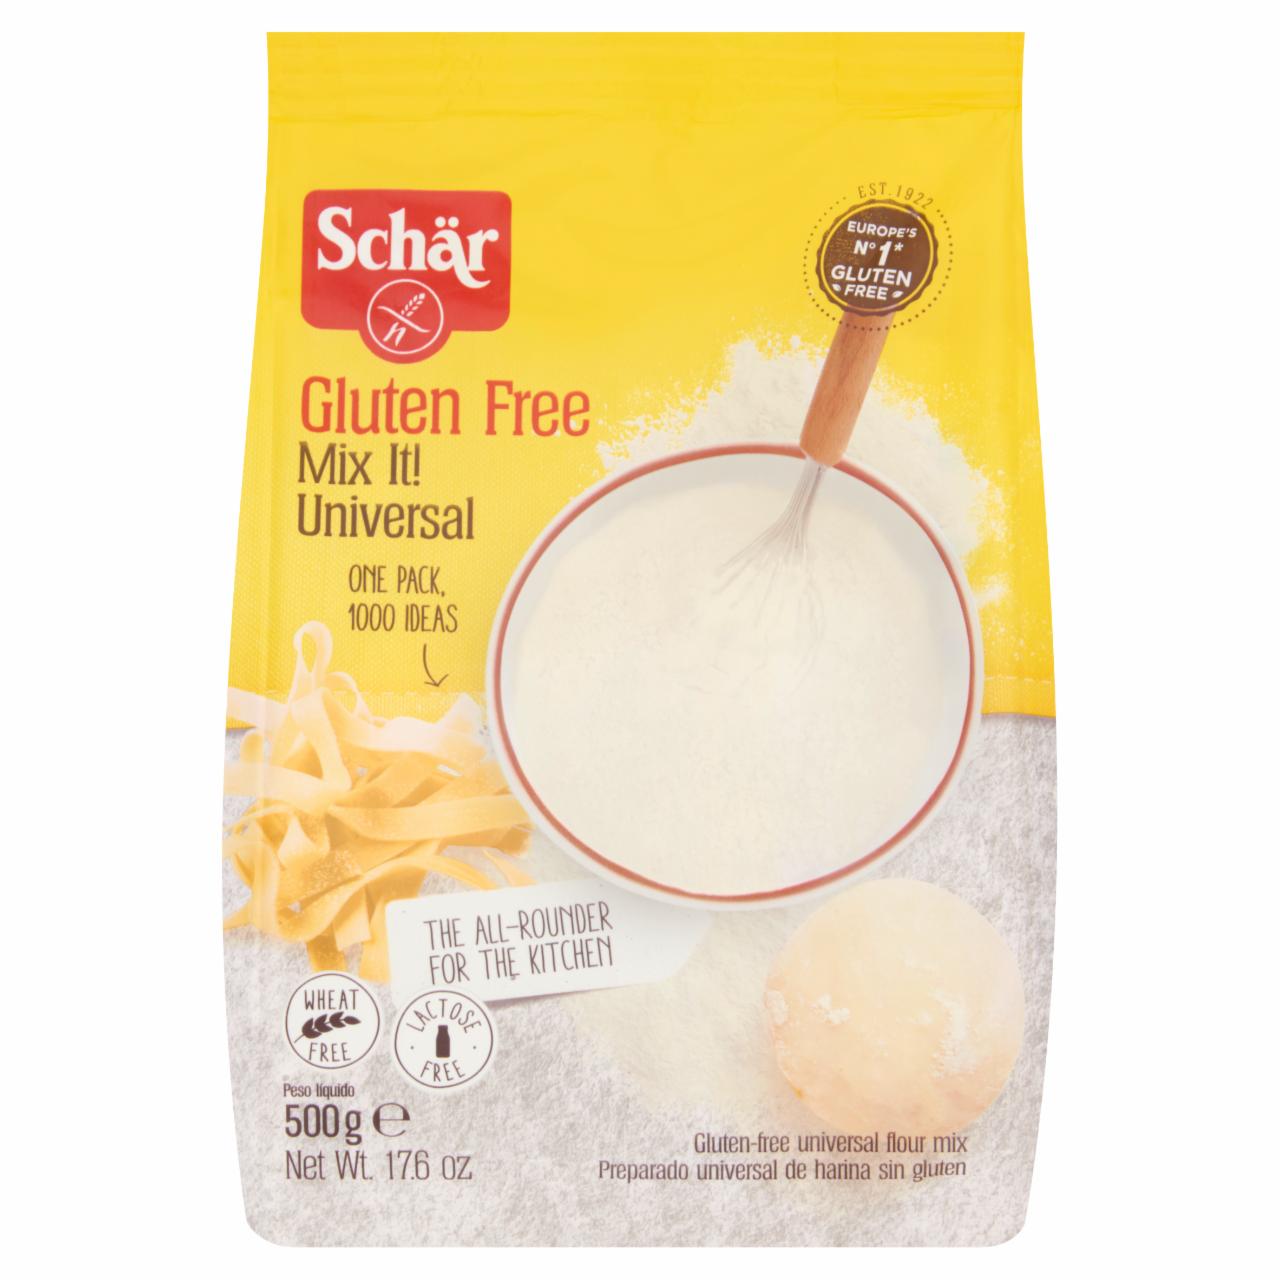 Képek - Schär Mix It! univerzális gluténmentes lisztkeverék 500 g